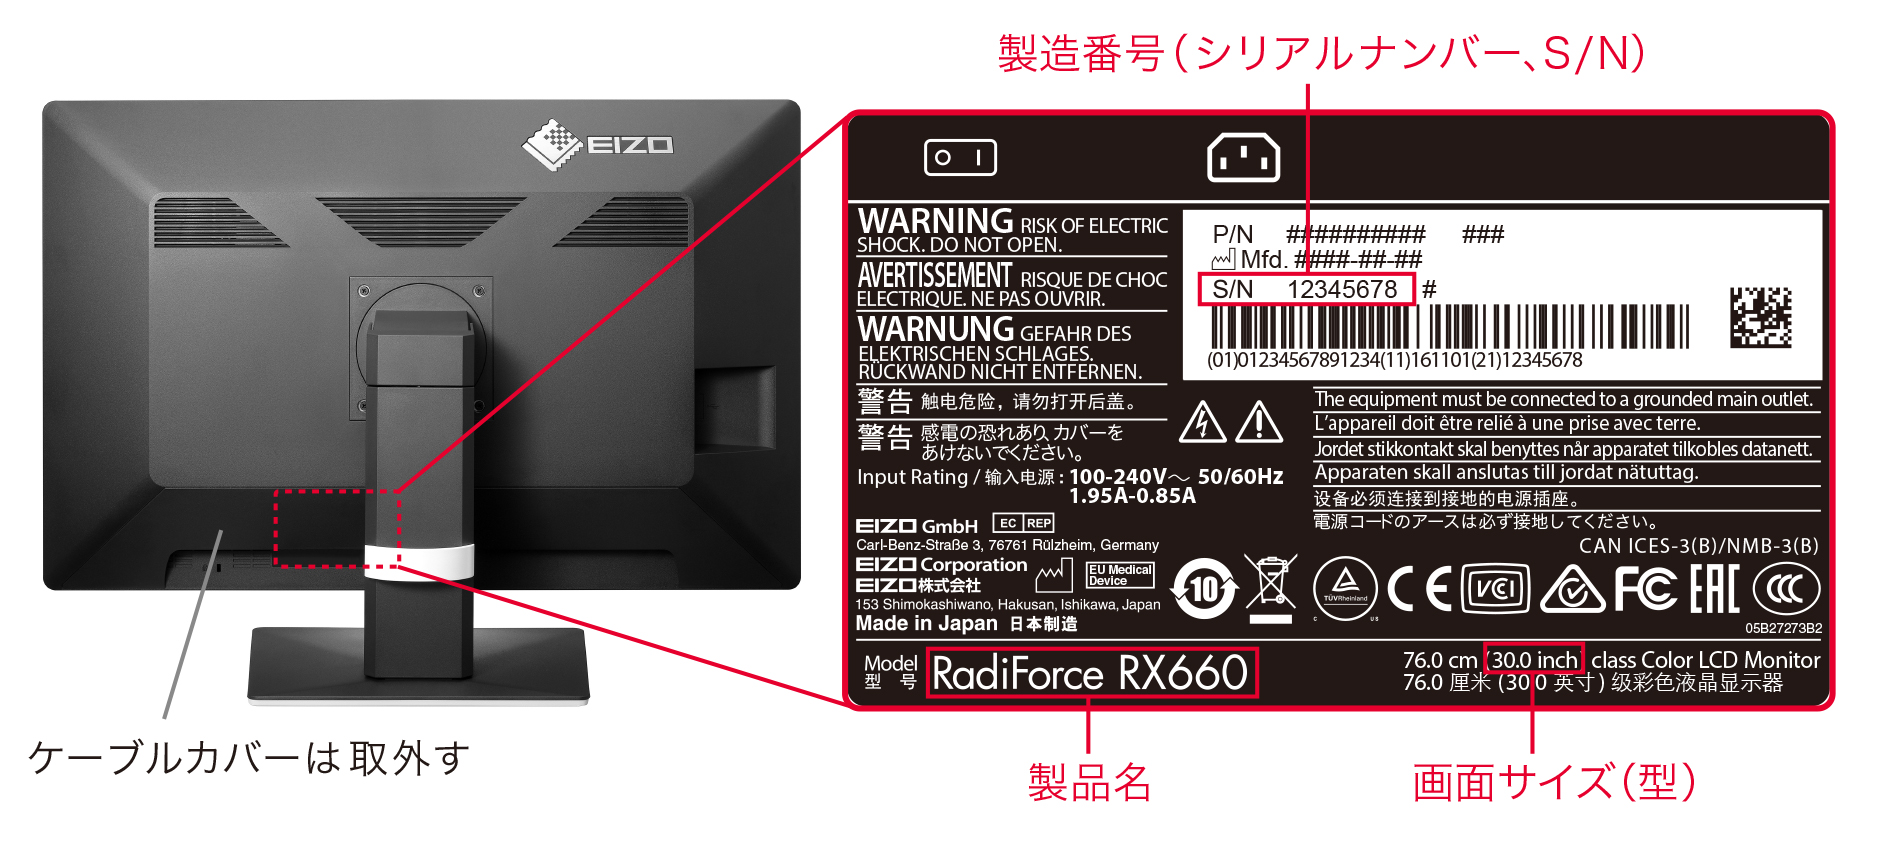 ネームプレート RadiForce RX660